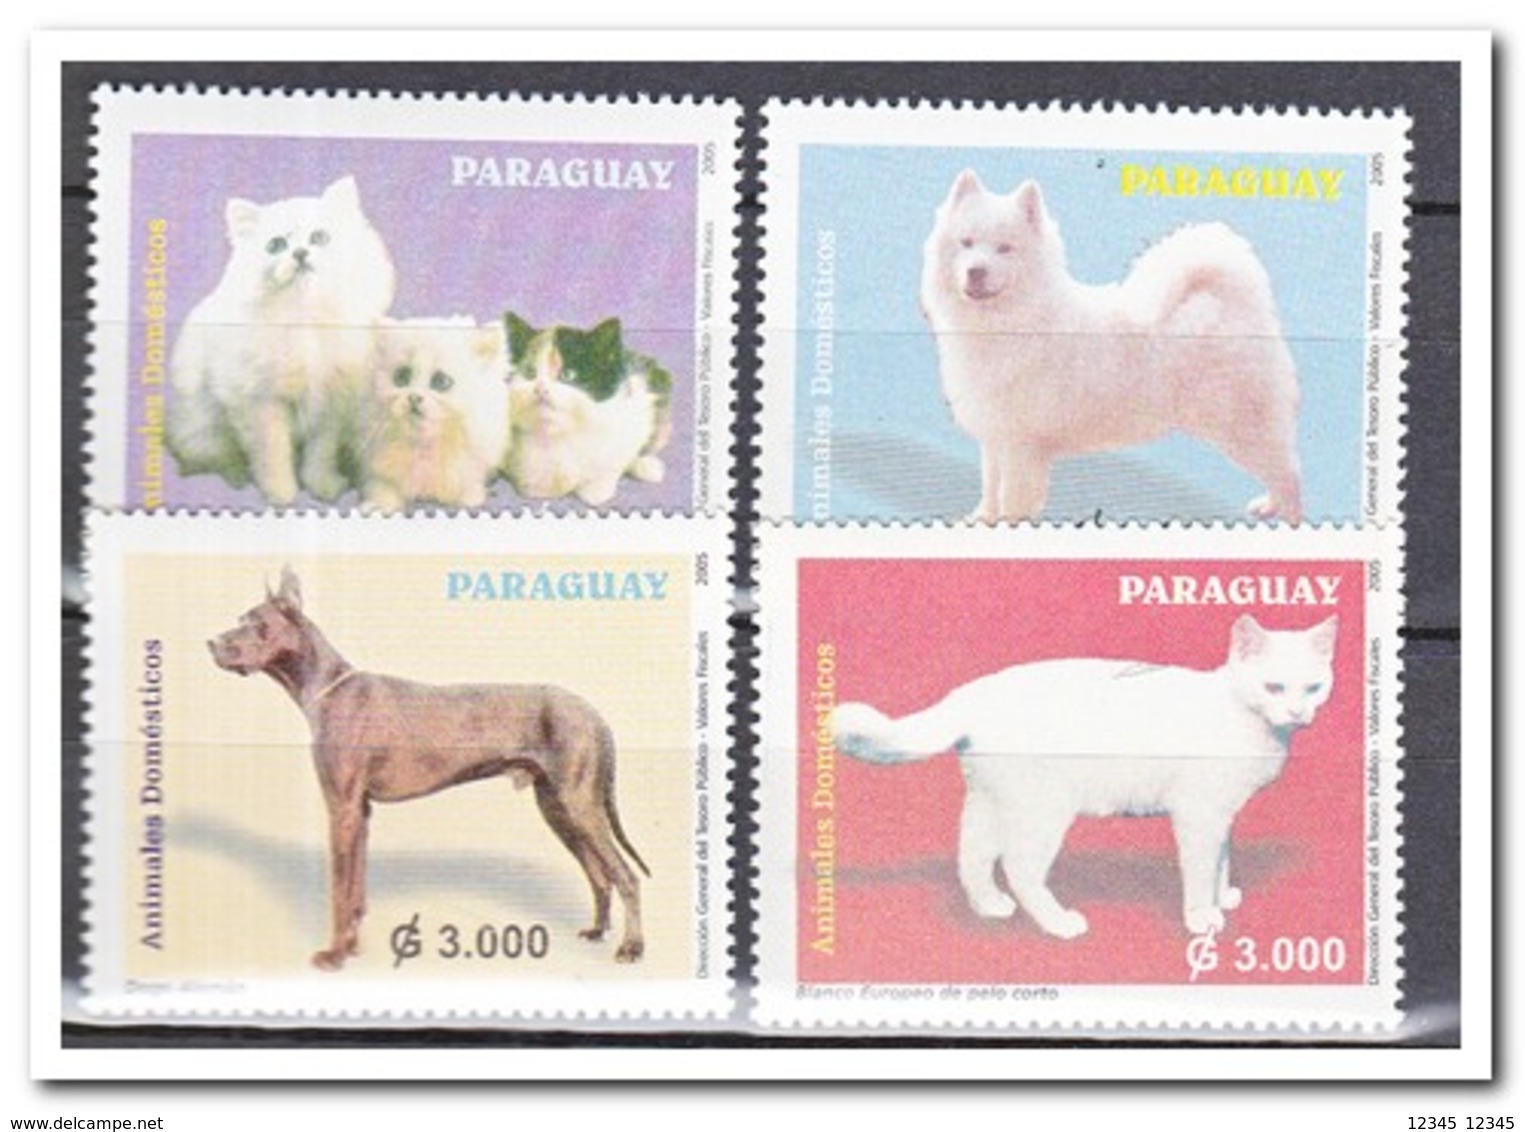 Paraguay 2005, Postfris MNH, Cats, Dogs - Paraguay